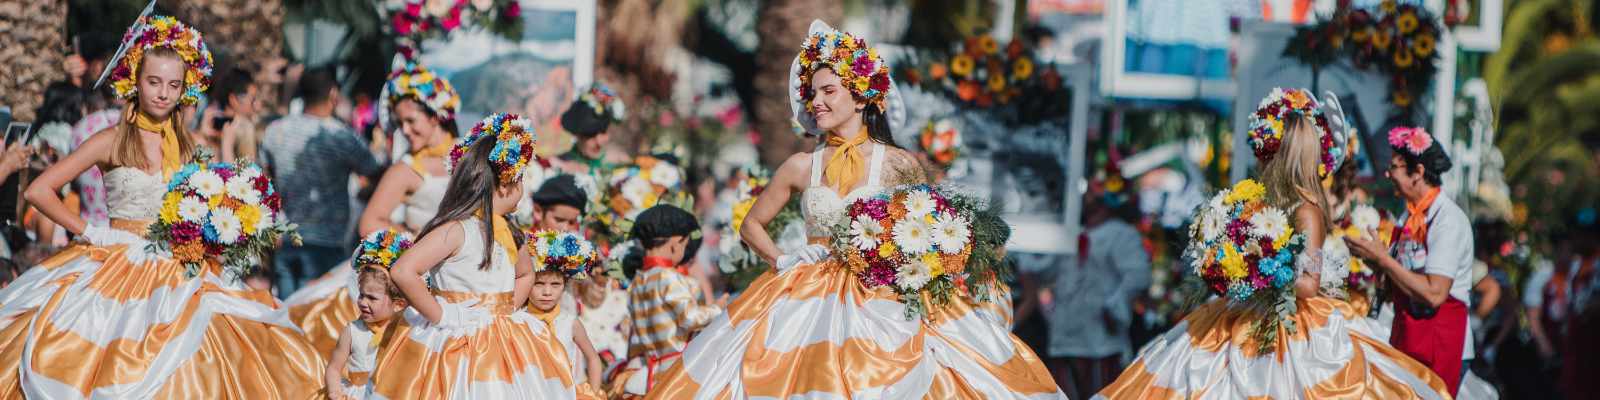 Blumenfest auf Madeira (Photo by Turismo da Madeira)